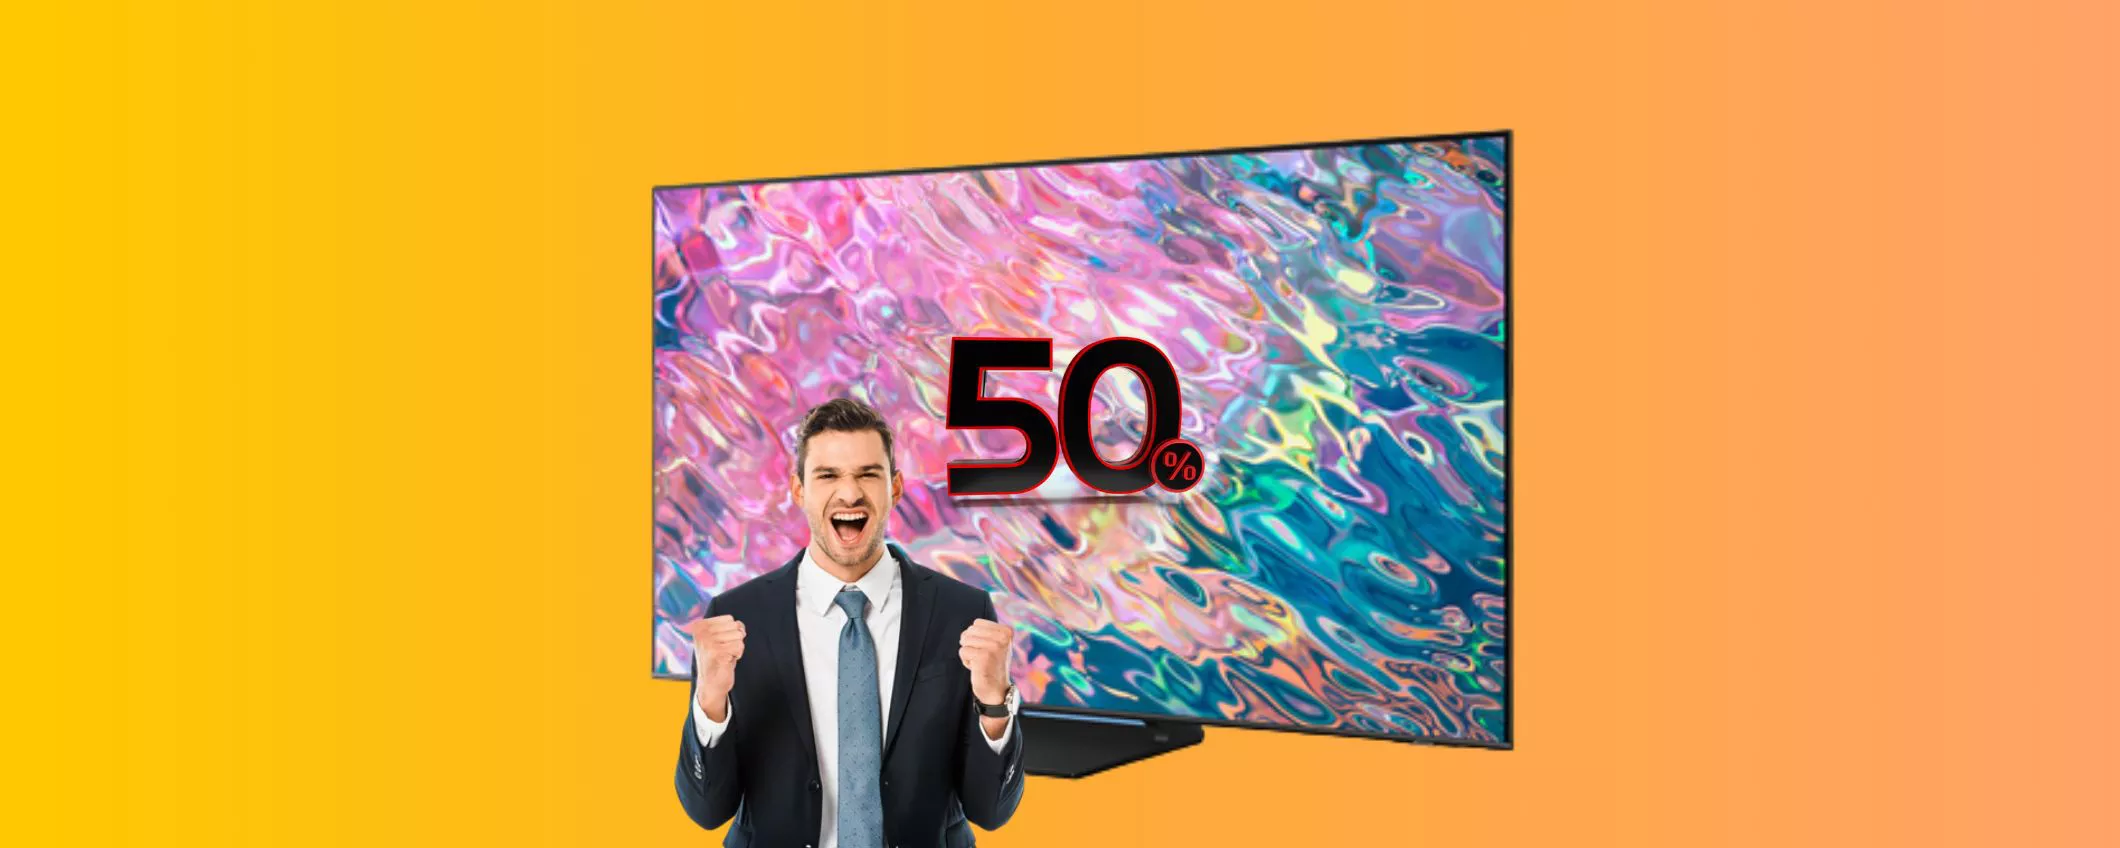 Una smart TV Samsung top a metà prezzo è possibile? Assolutamente si!